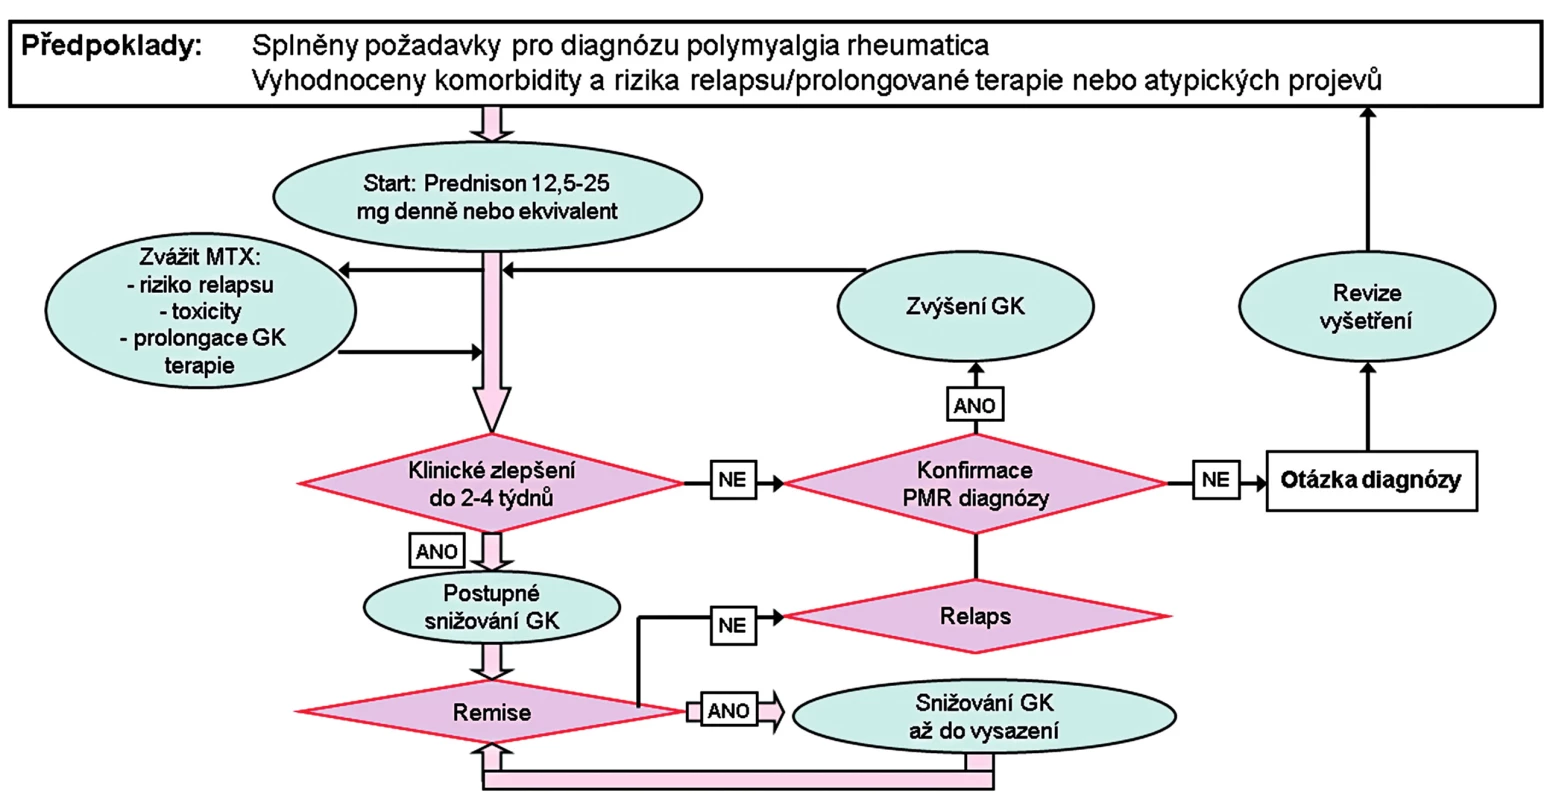 Algoritmus terapie PMR podle doporučení EULAR/ACR 2015 (11).